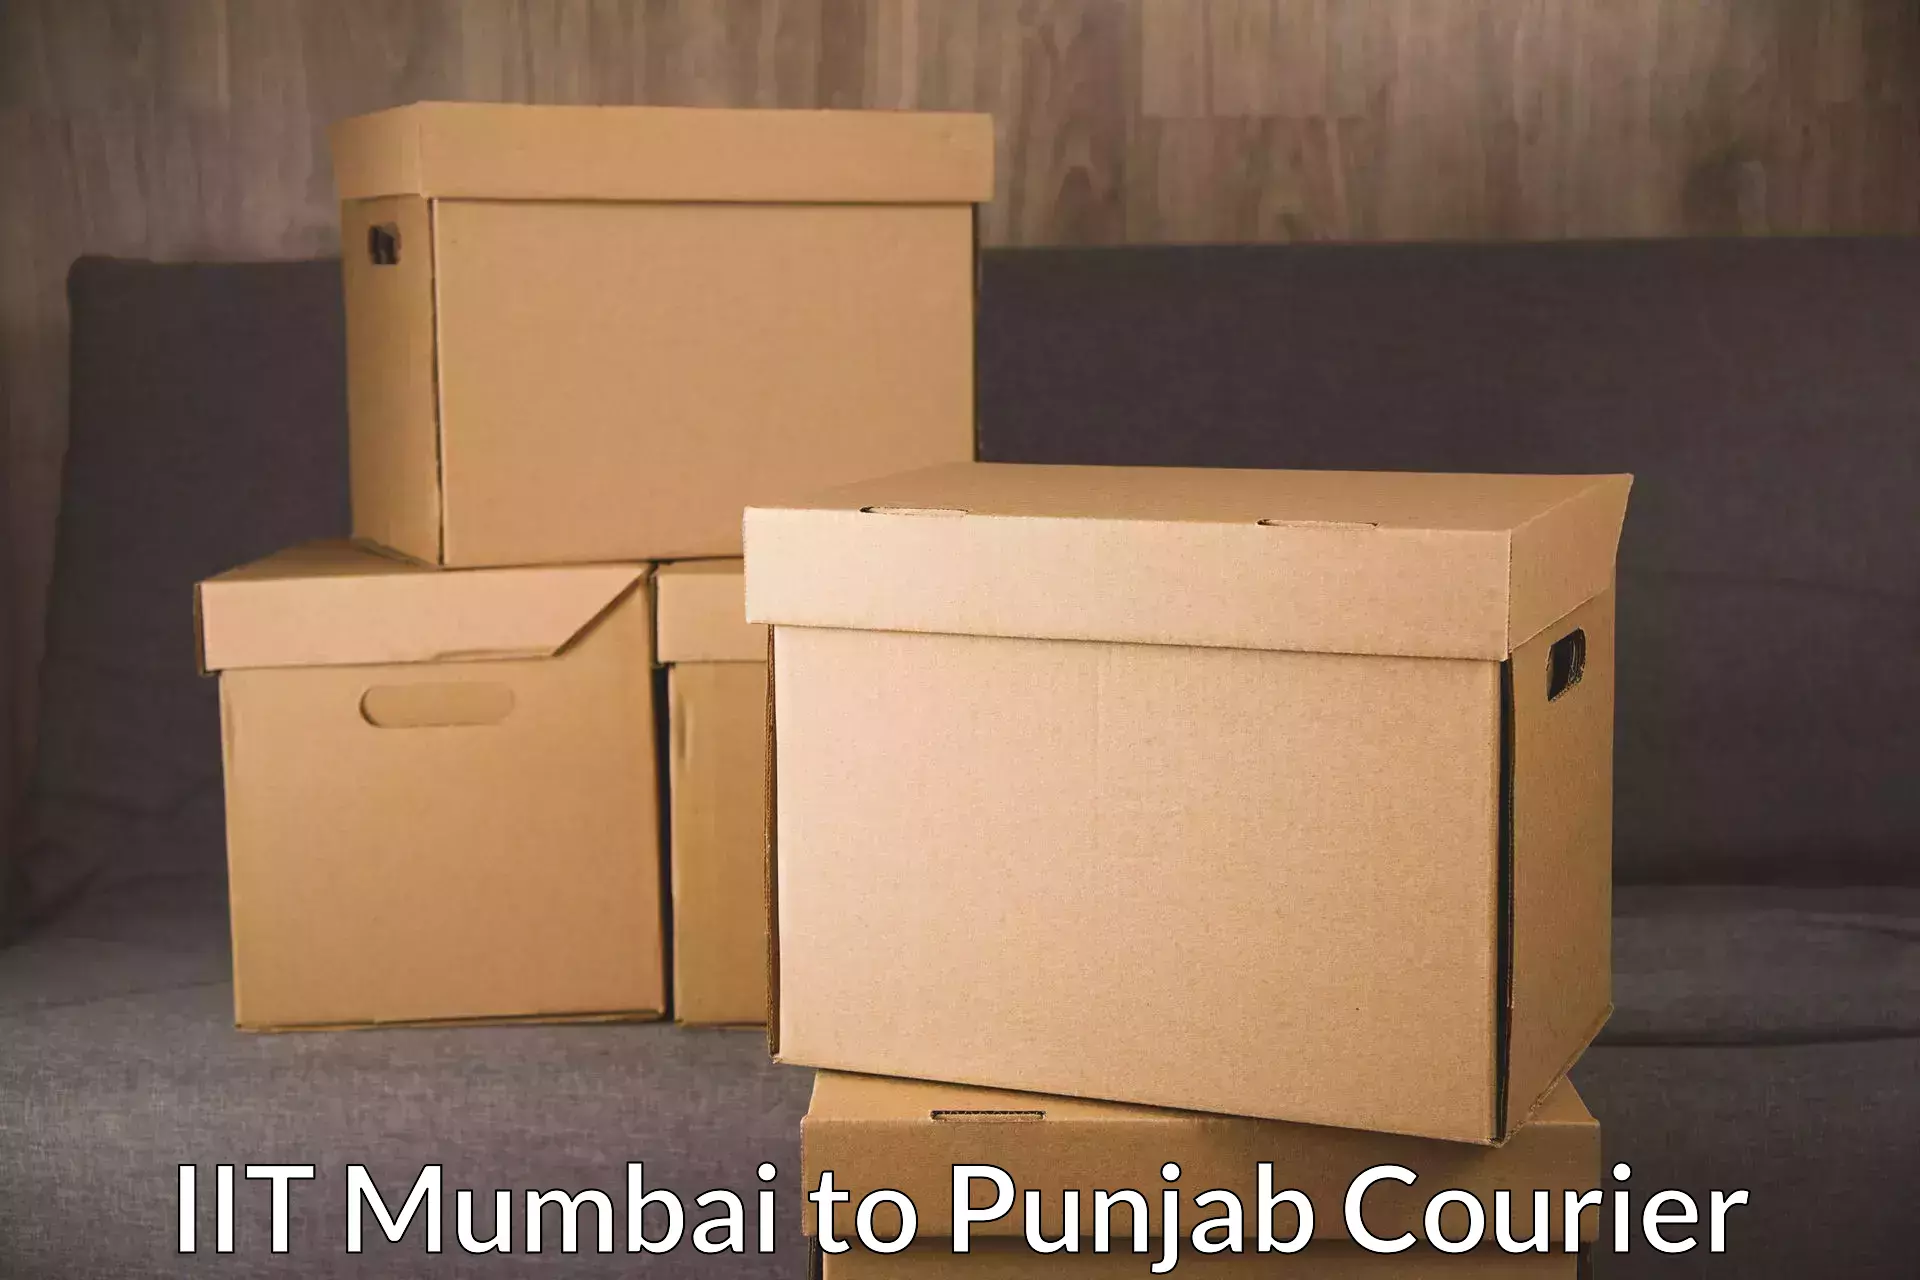 24-hour courier service IIT Mumbai to Punjab